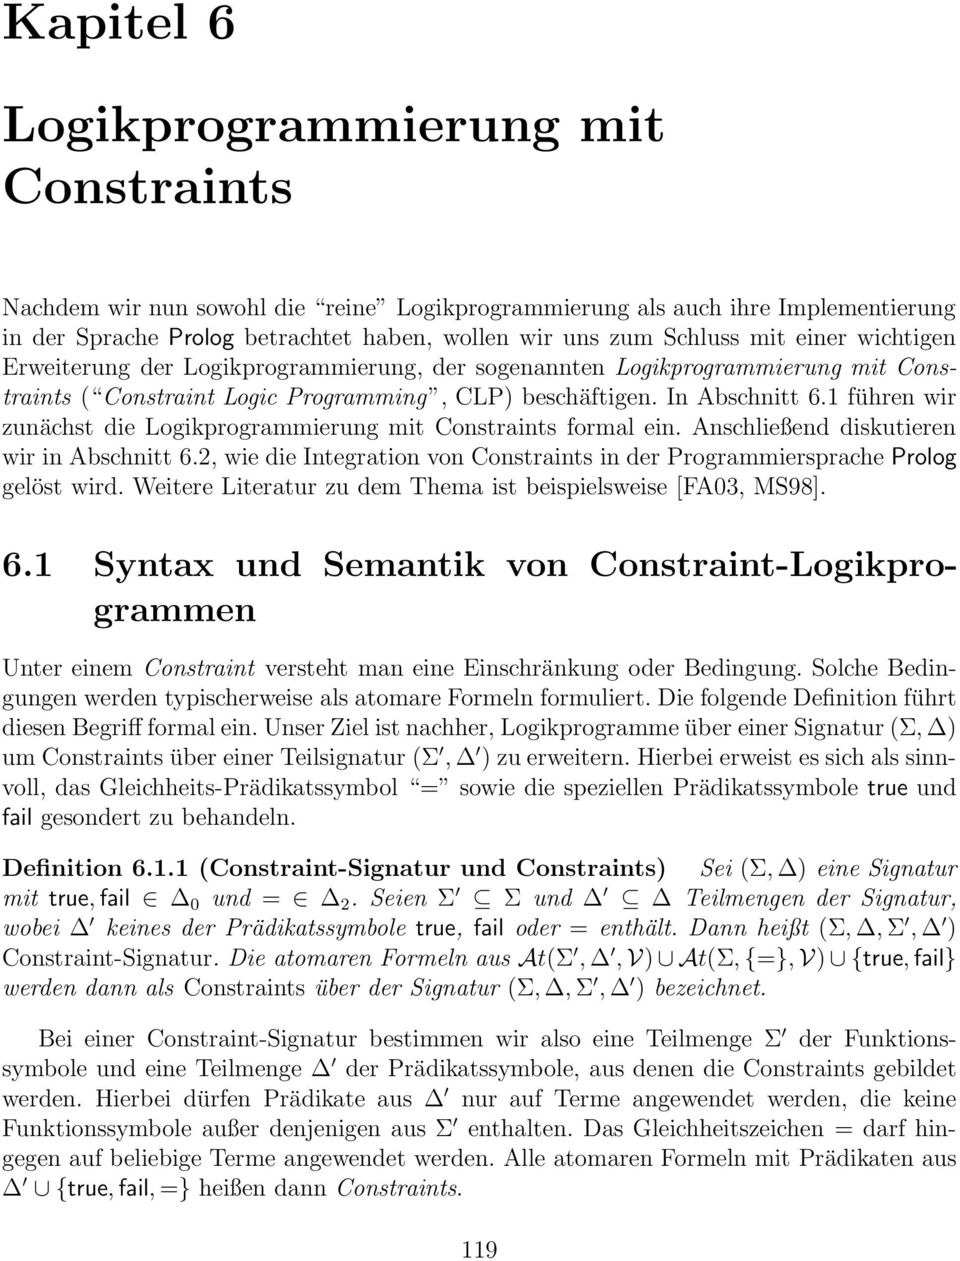 1 führen wir zunächst die Logikprogrammierung mit Constraints formal ein. Anschließend diskutieren wir in Abschnitt 6.